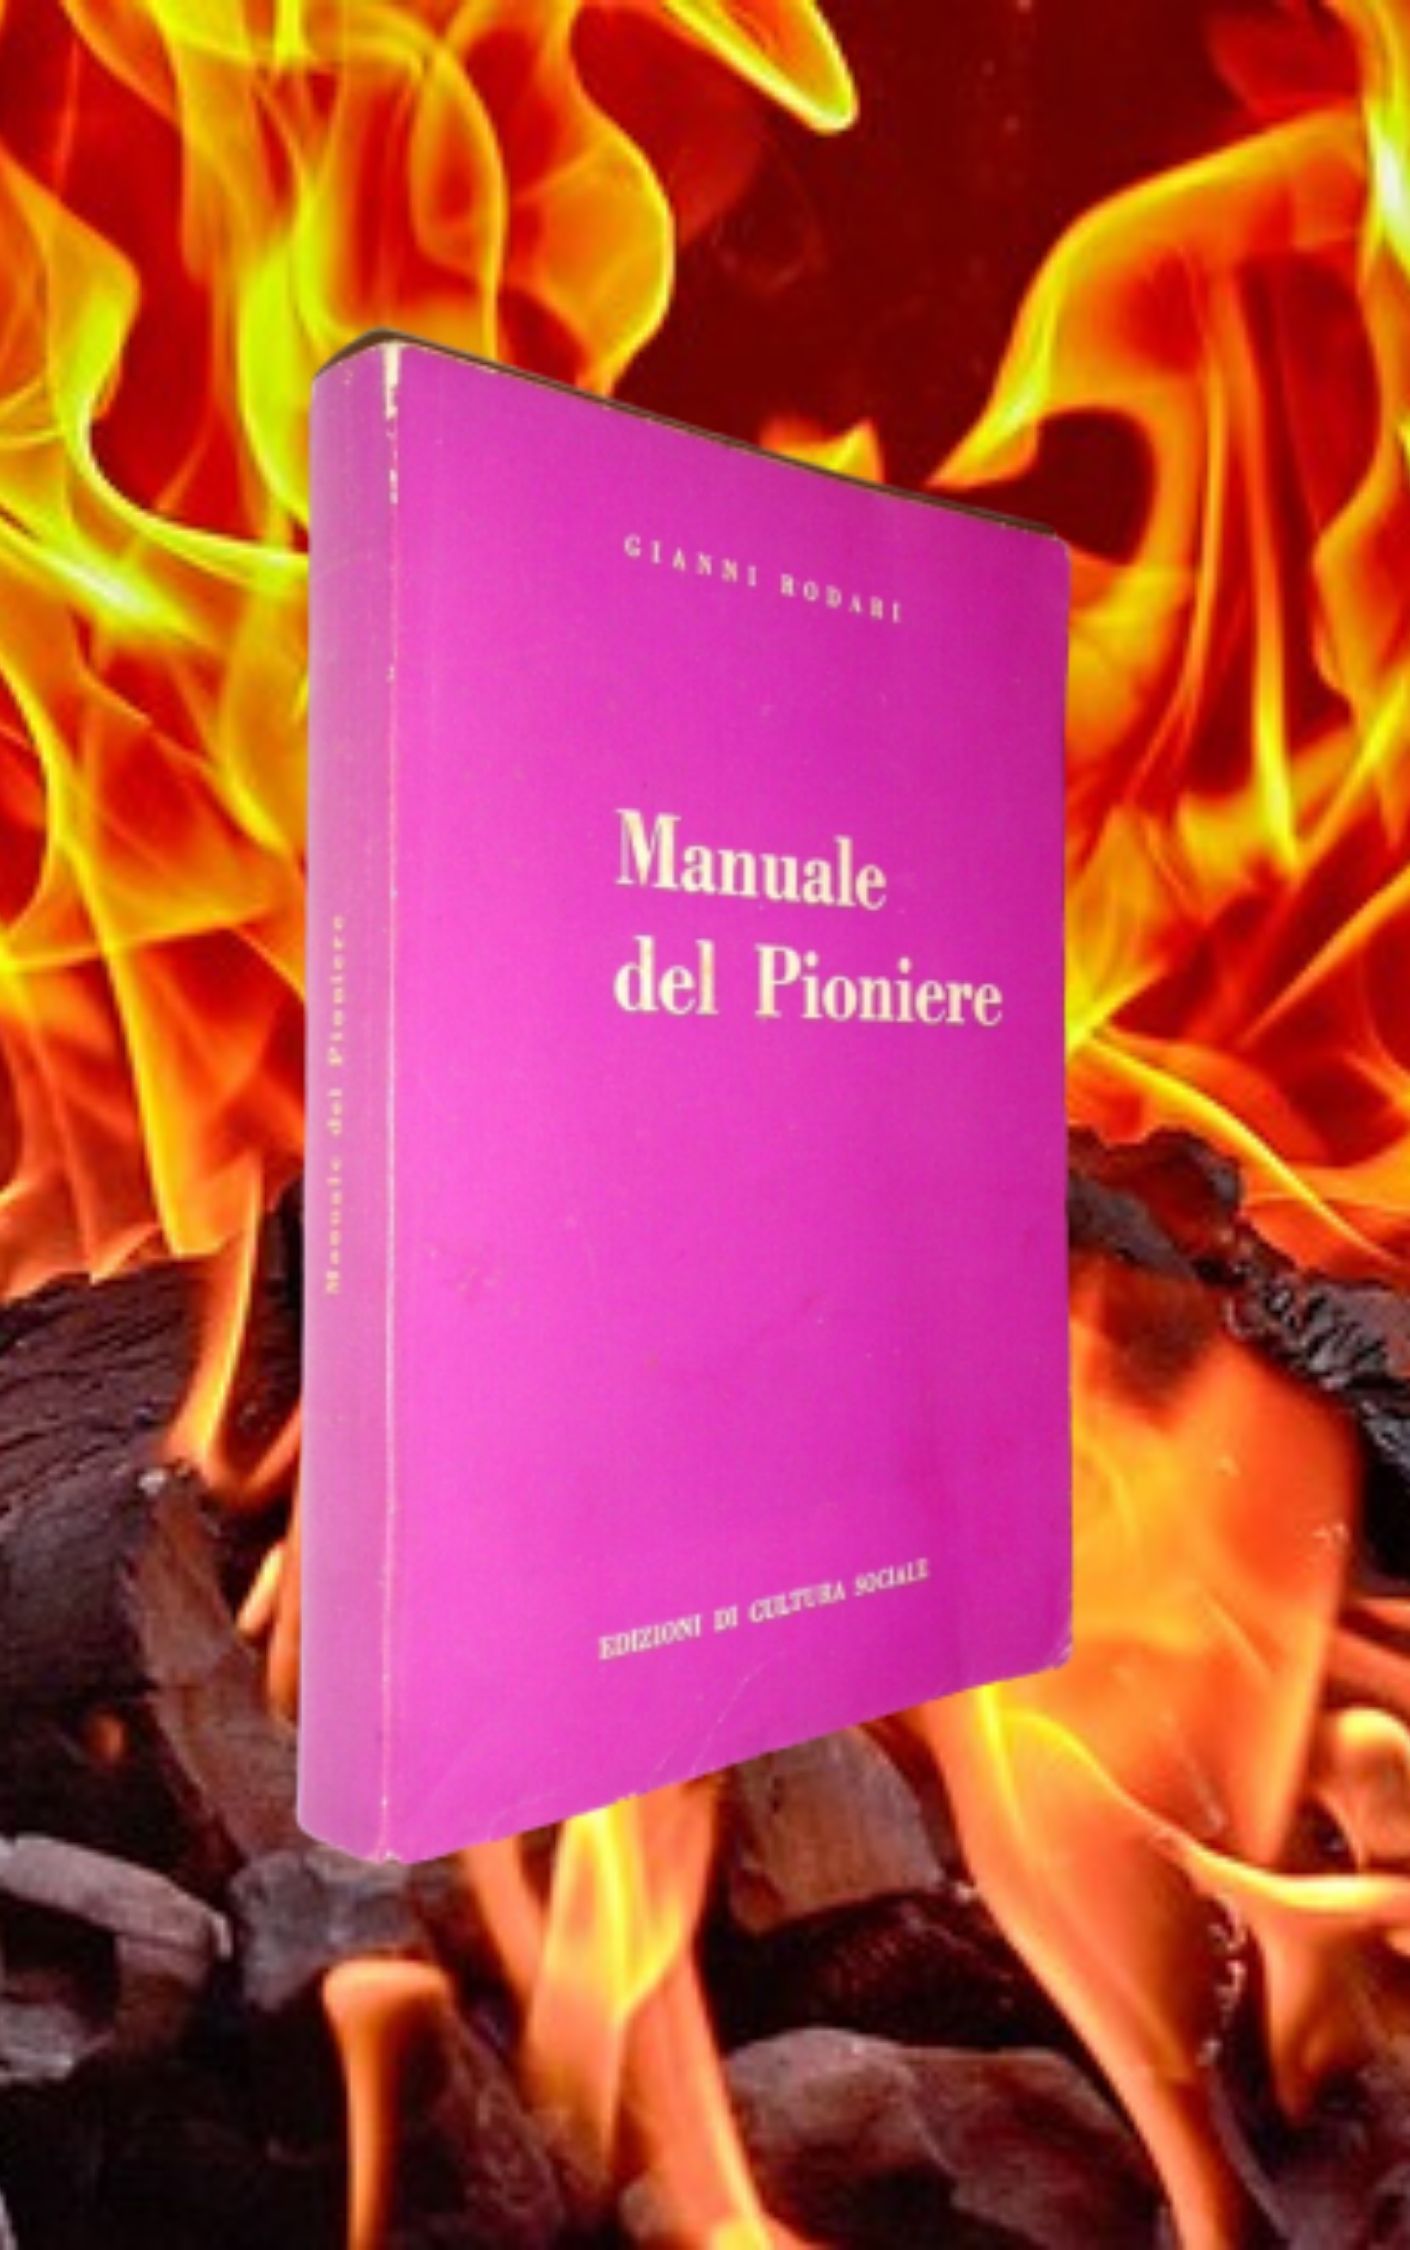 “Manuale del pioniere” di Gianni Rodari: a caccia di copie scampate al rogo